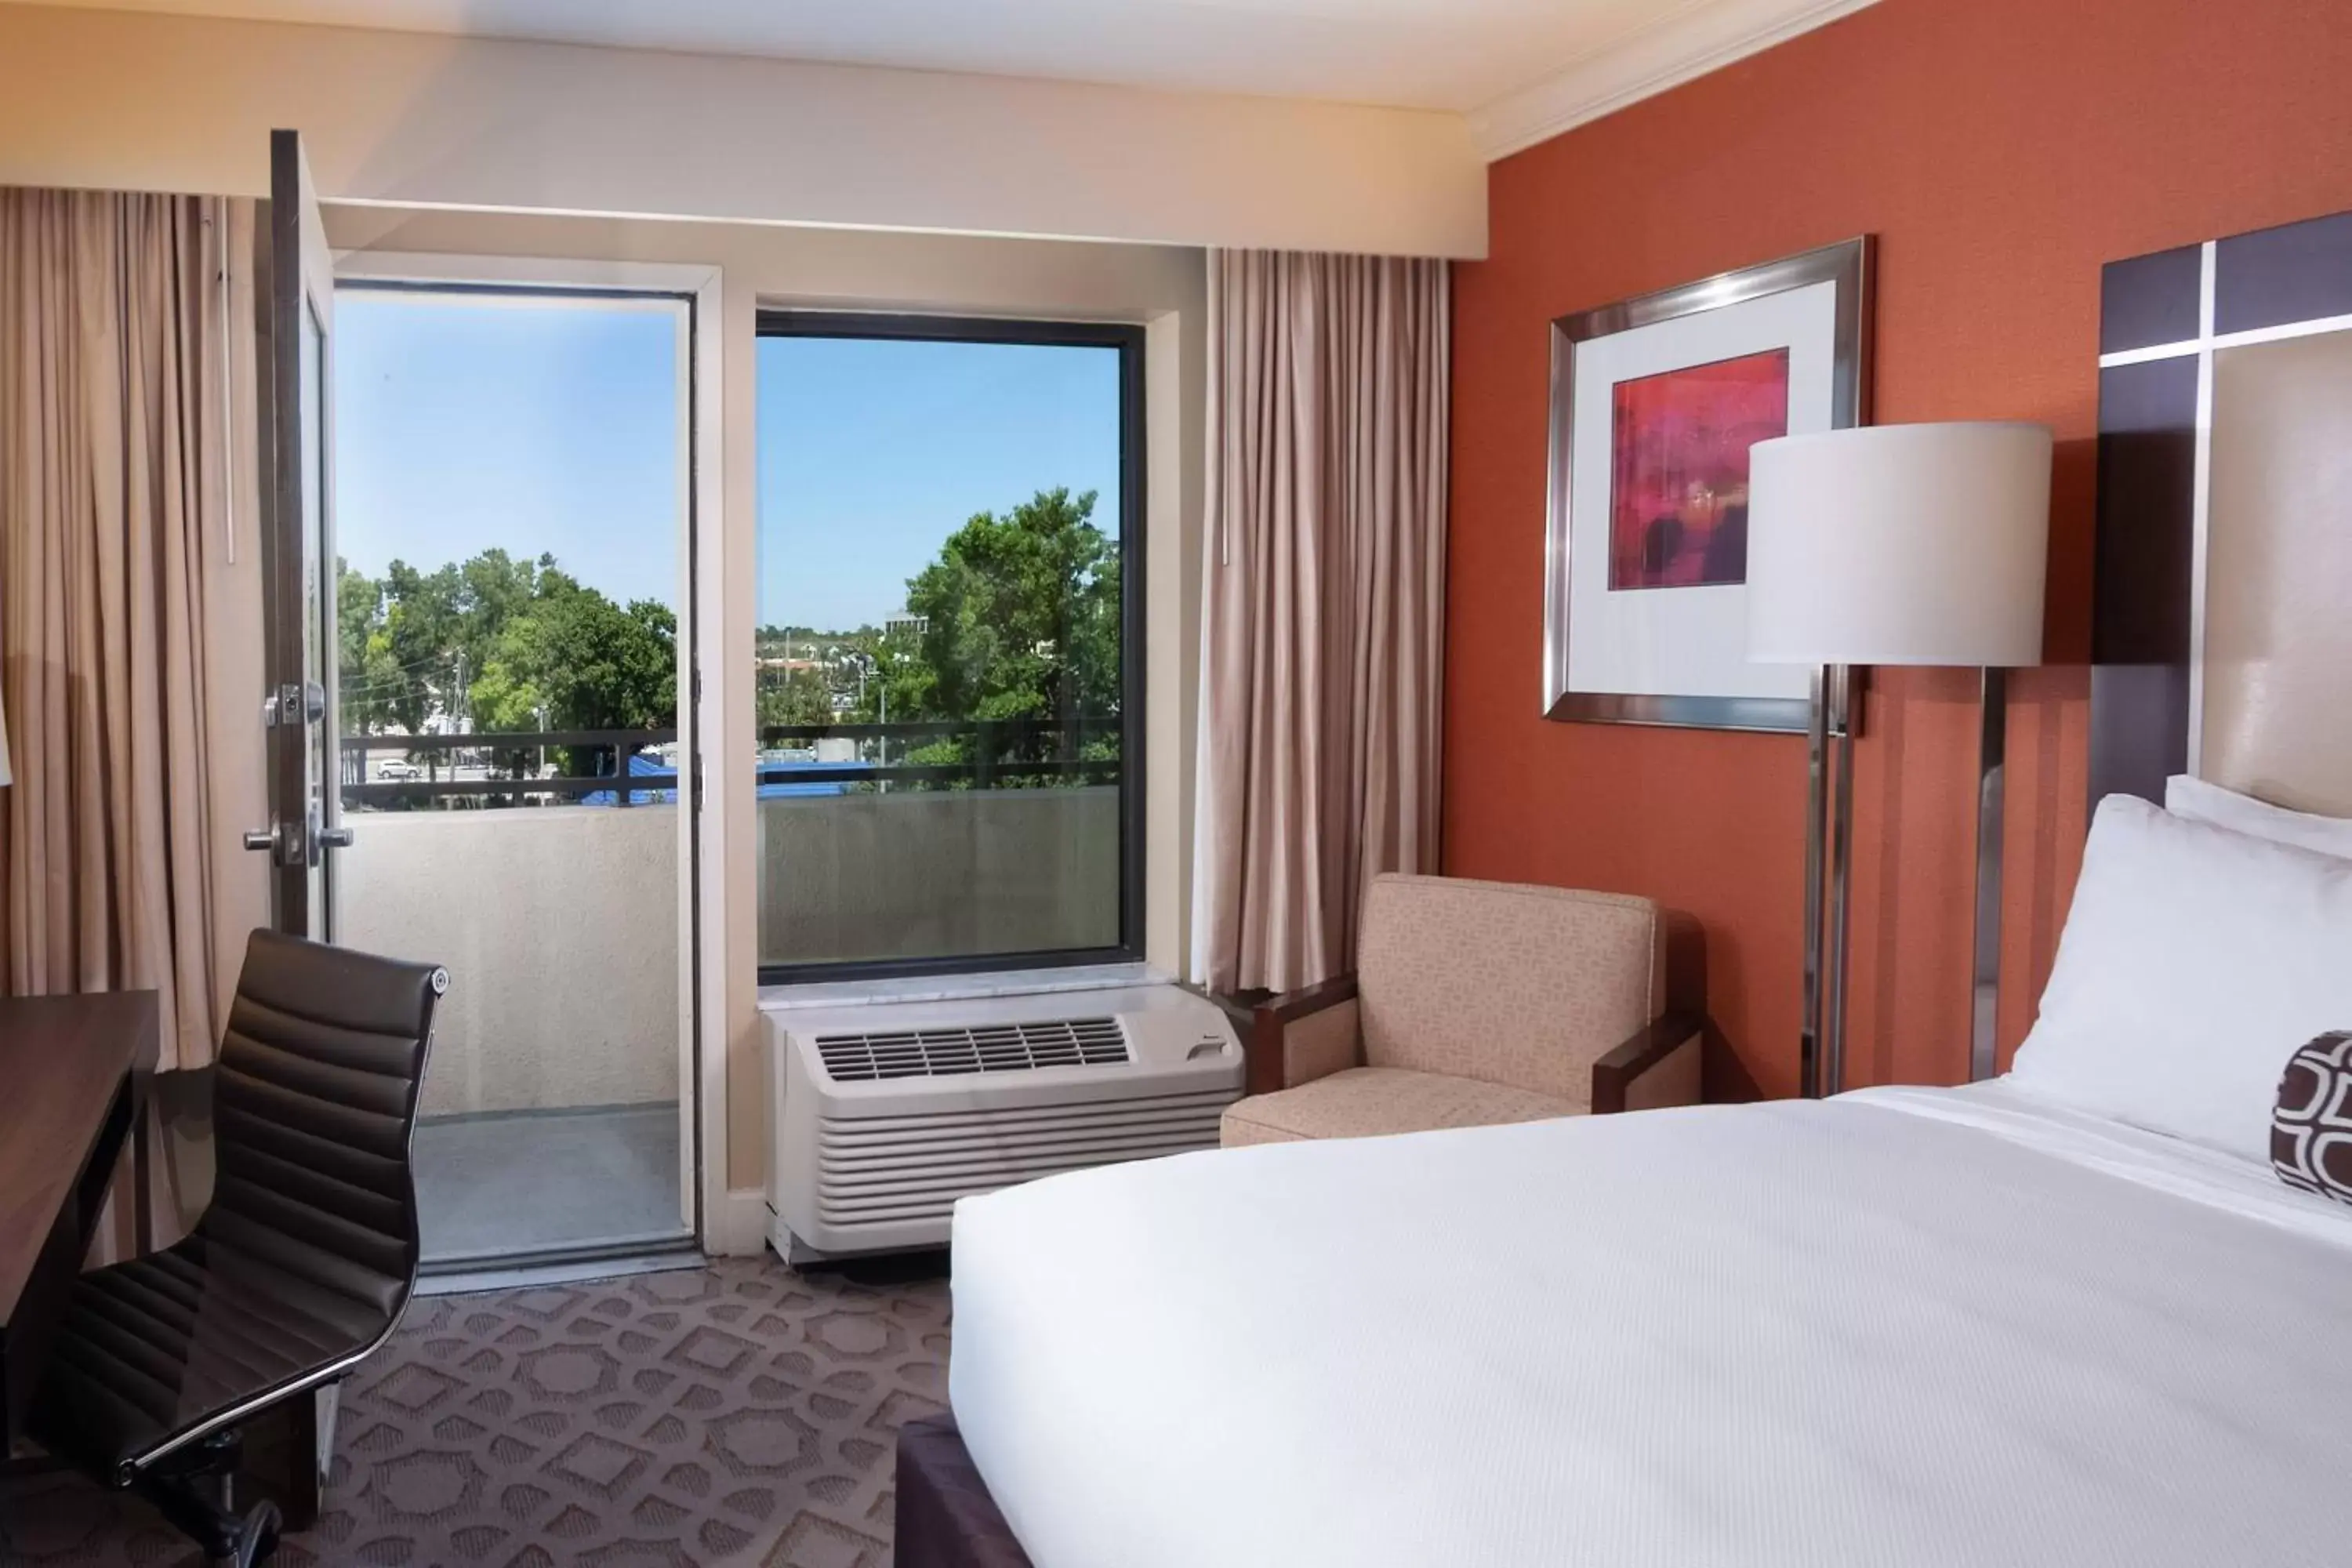 Queen Room with Balcony in Delta Hotels by Marriott Orlando Lake Buena Vista